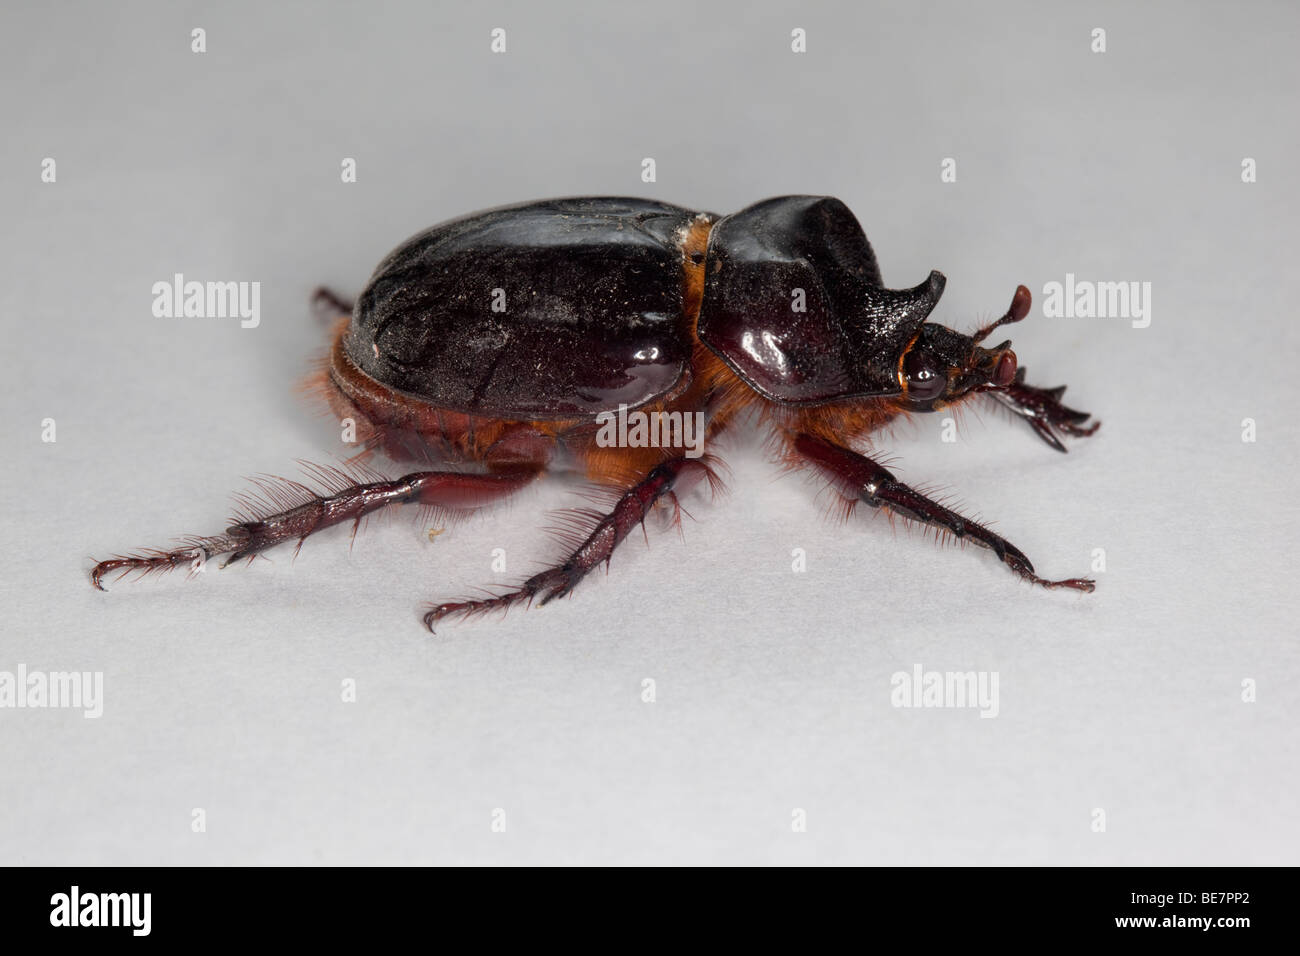 beetle rhinoceros images